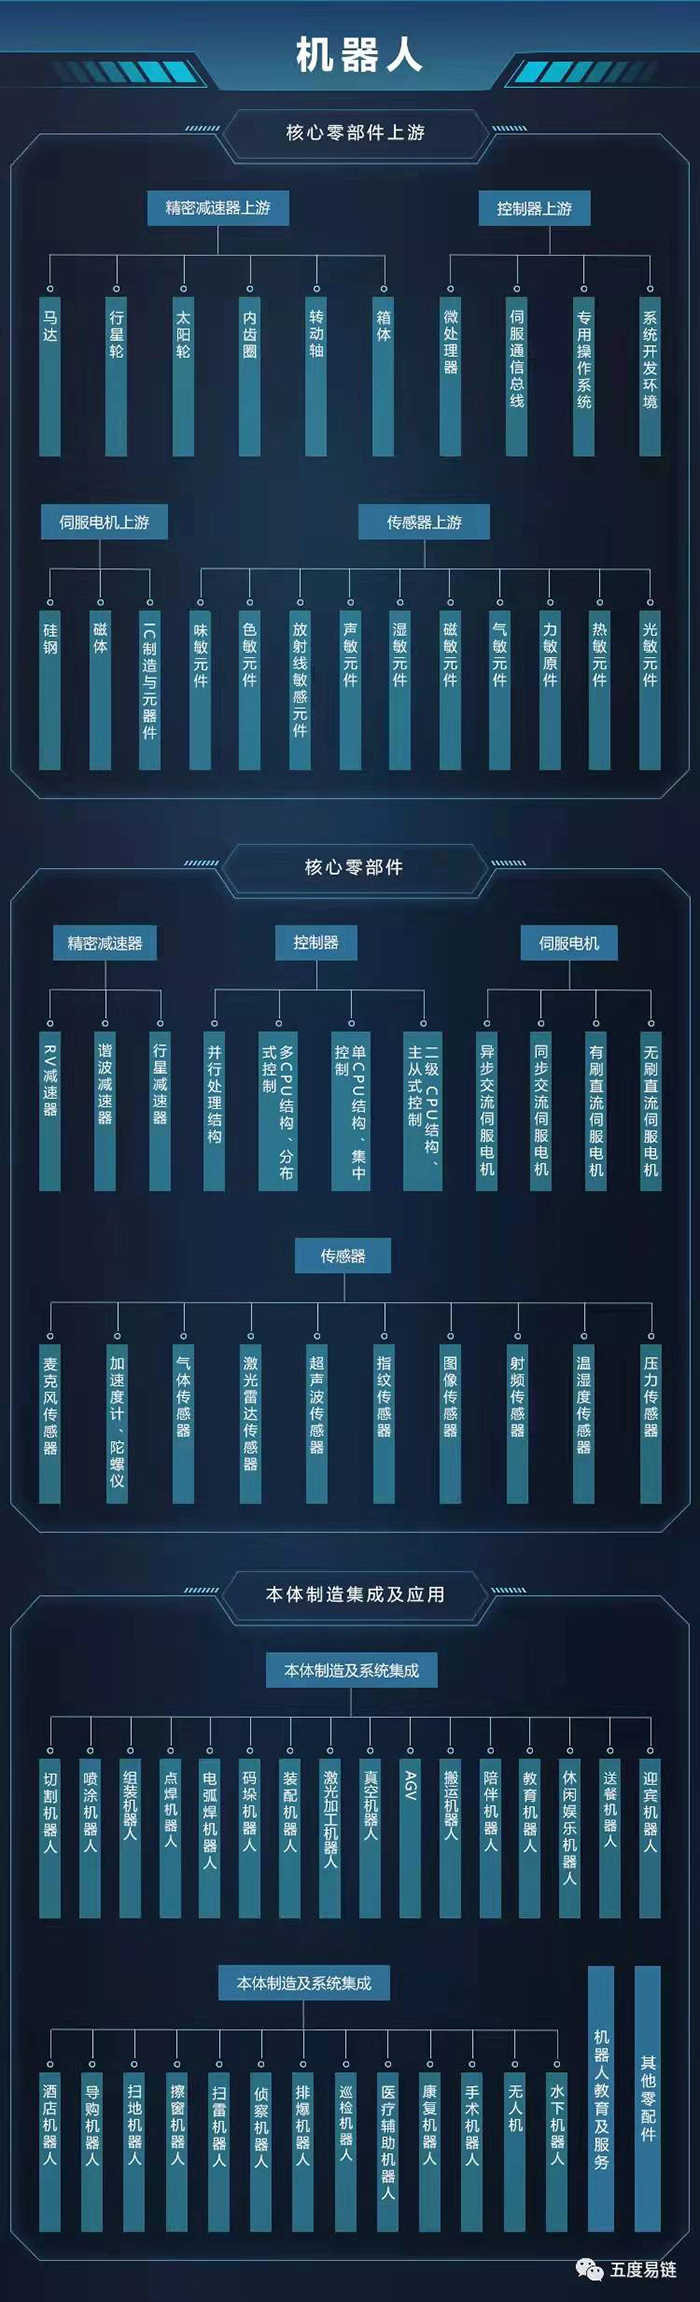 中国机器人产业链图谱｜产业链全景图